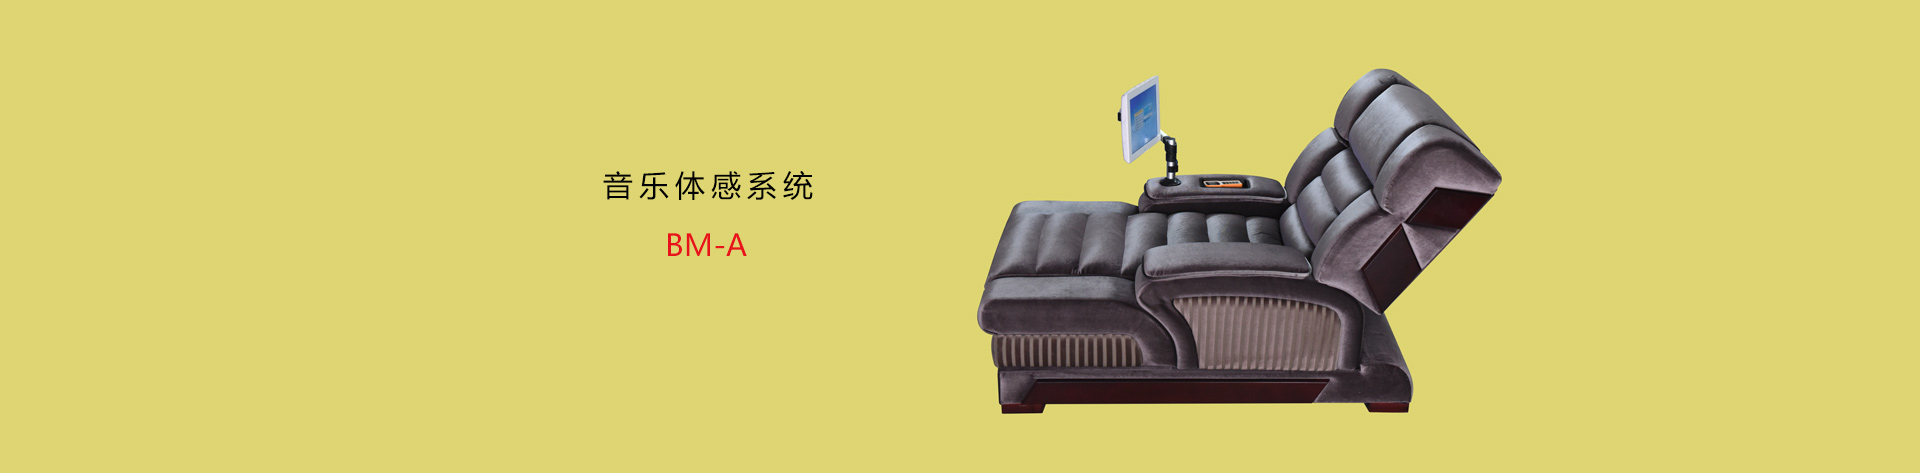  天津市博达电子设备有限公司